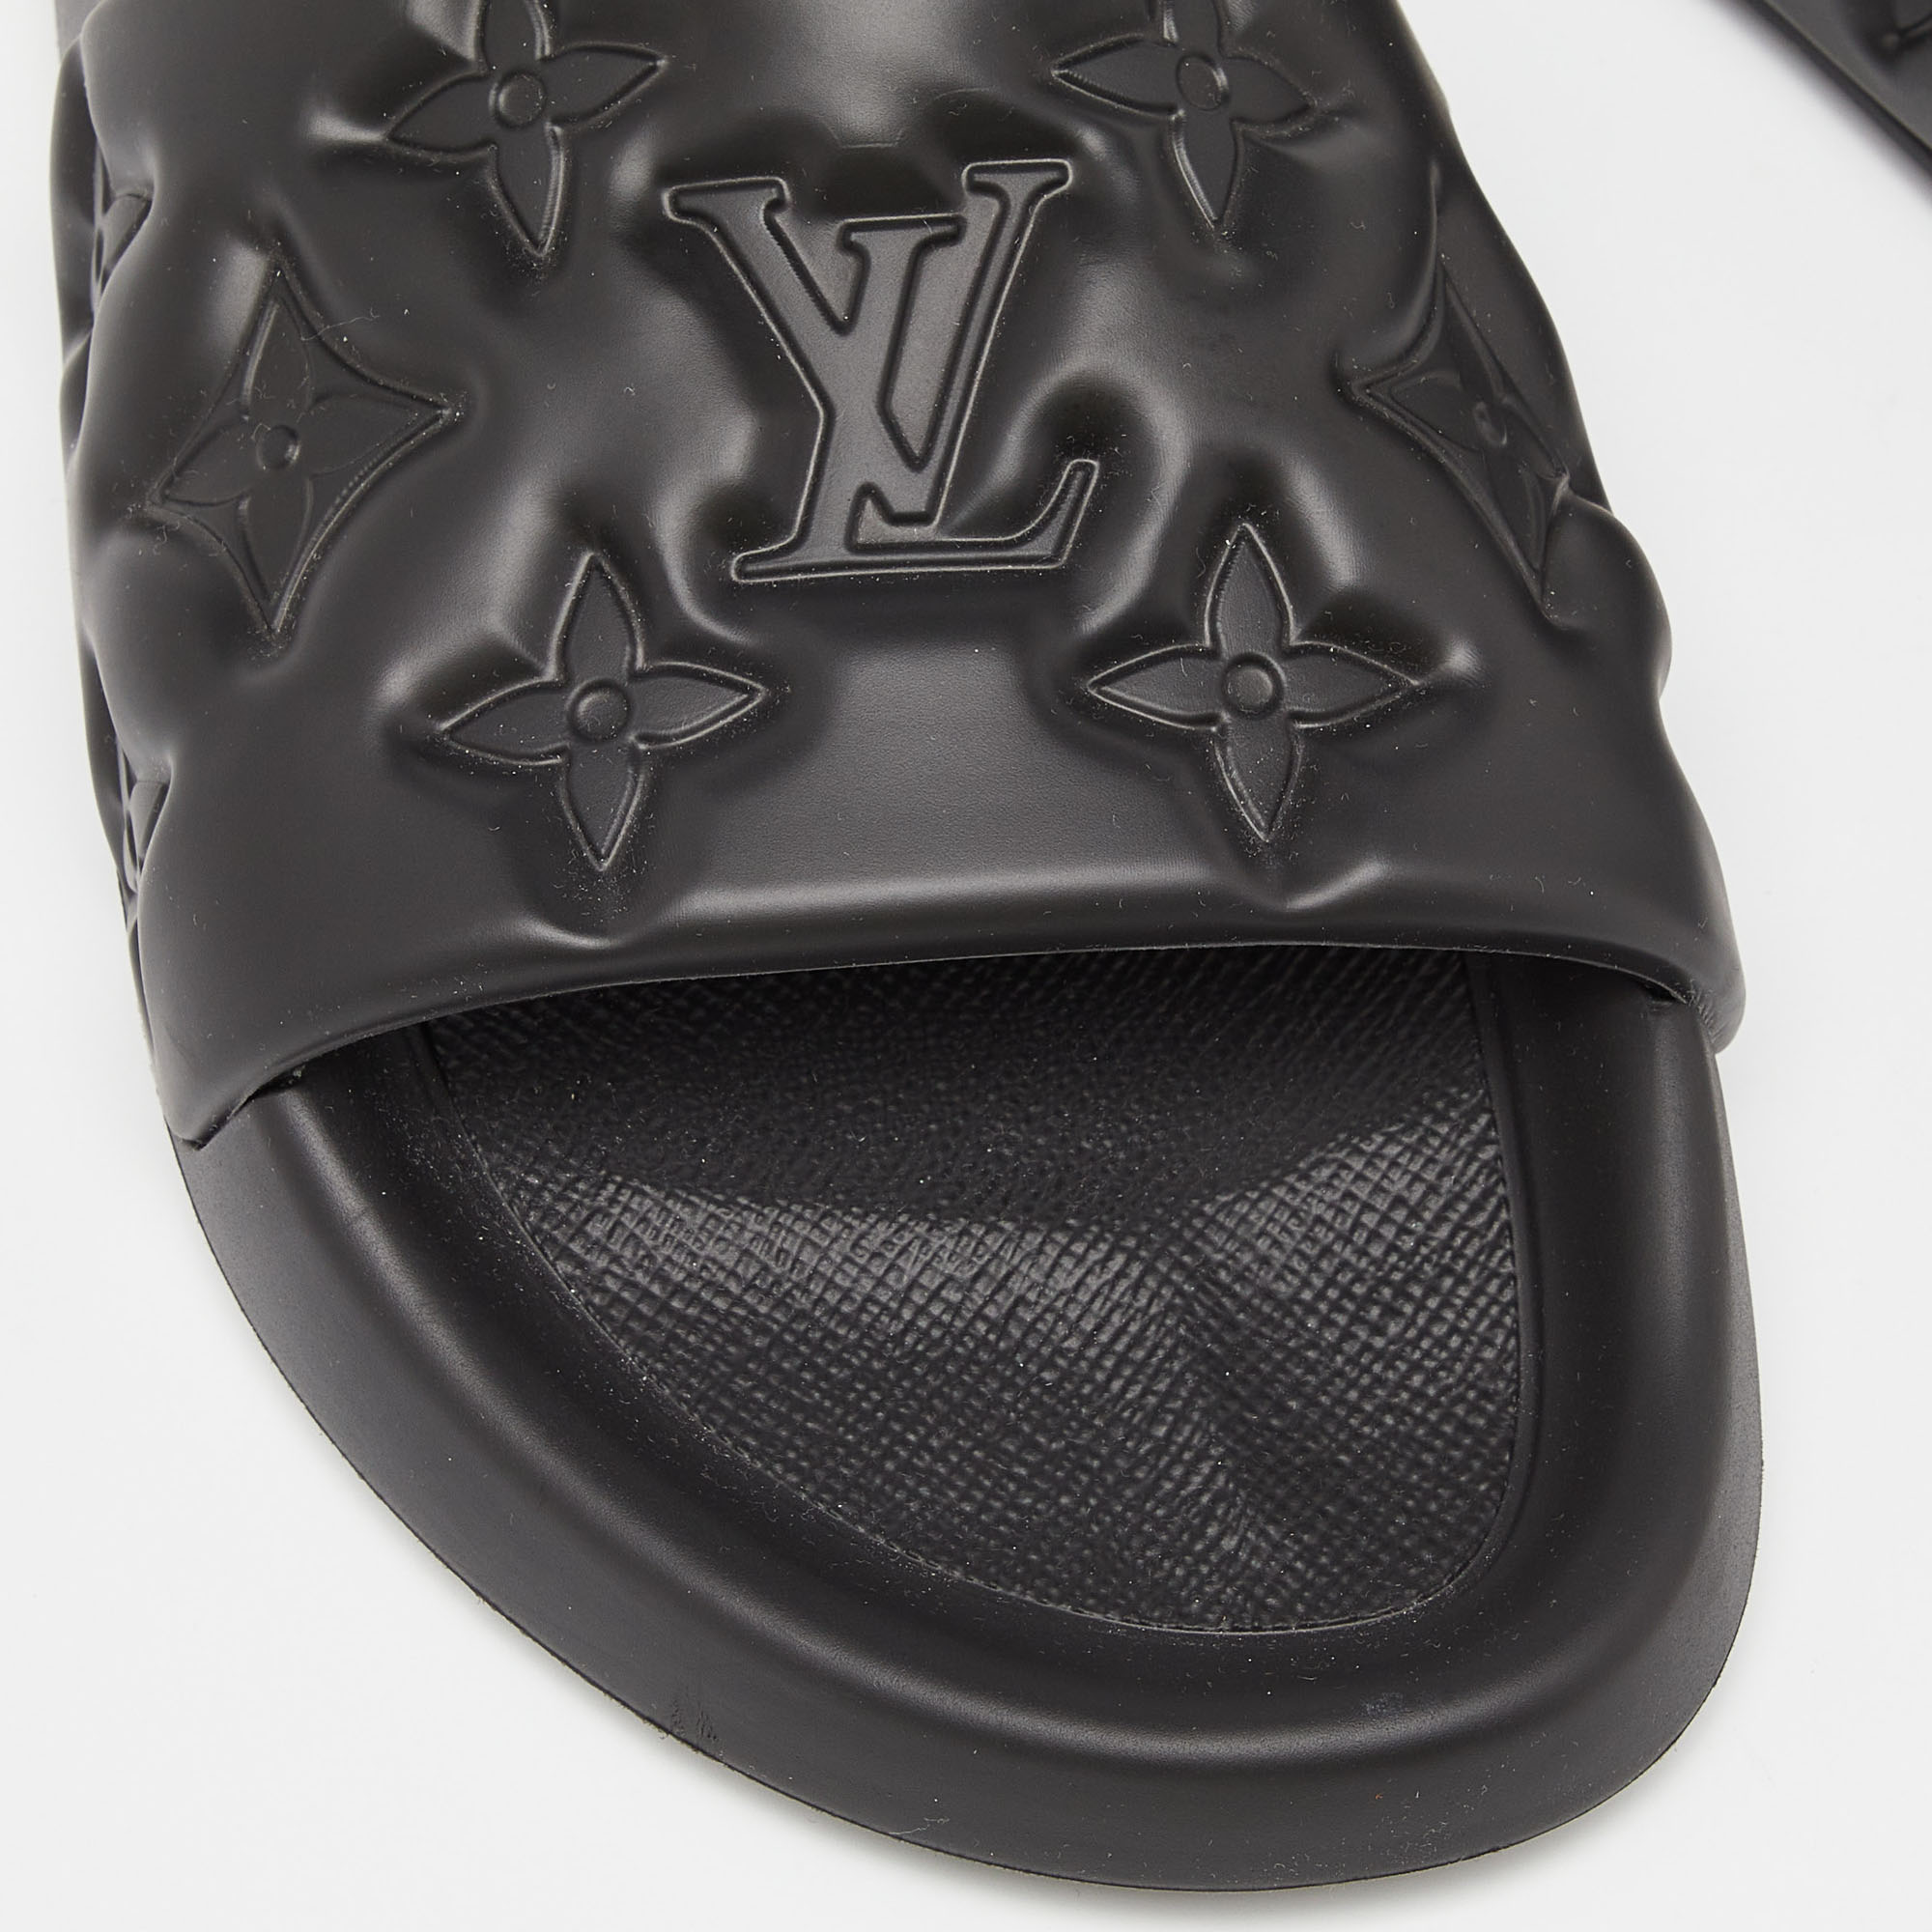 Louis Vuitton Black Monogram Rubber Waterfront Mule Sandals Size 42